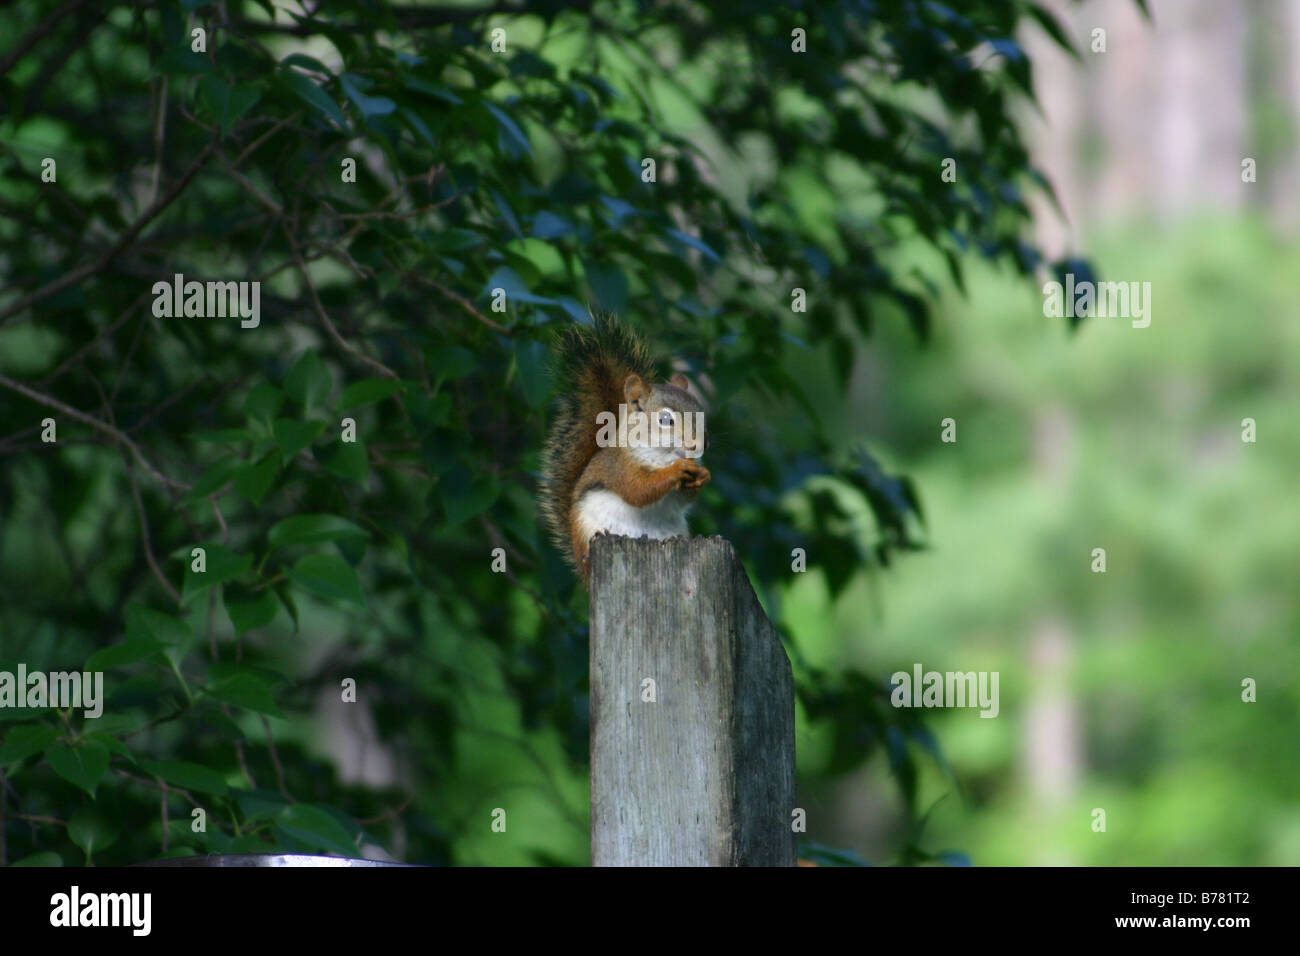 Uno scoiattolo rosso posatoi su un palo di legno mentre mangiando un seme, contro uno sfondo di foglie verdi. Foto Stock